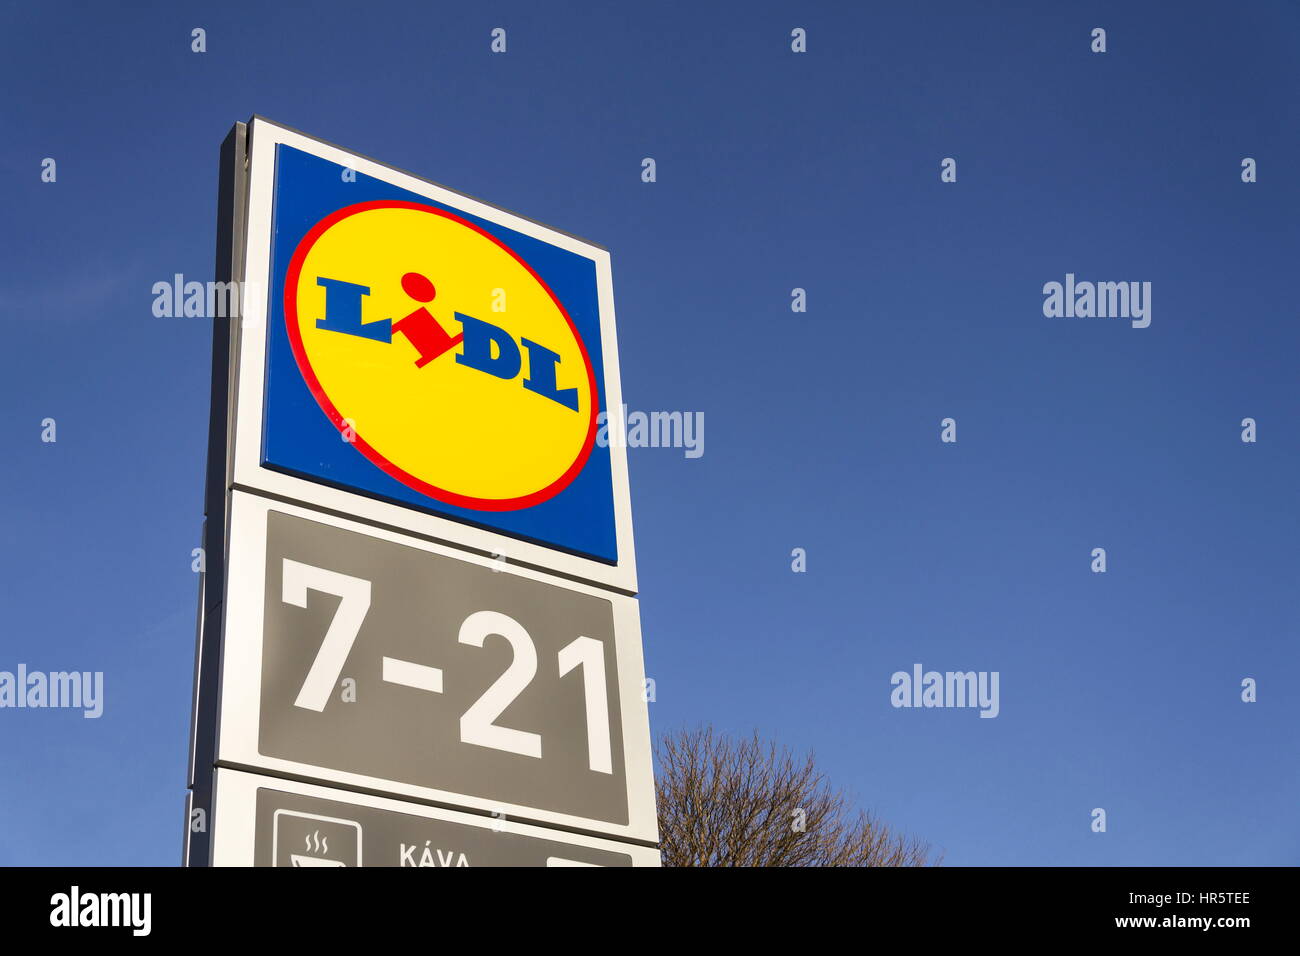 Praga, Repubblica Ceca - 25 febbraio: LIDL logo aziendale nella parte anteriore del supermercato dalla catena tedesca, parte di Schwartz Gruppe il 25 febbraio 2017 in pra Foto Stock